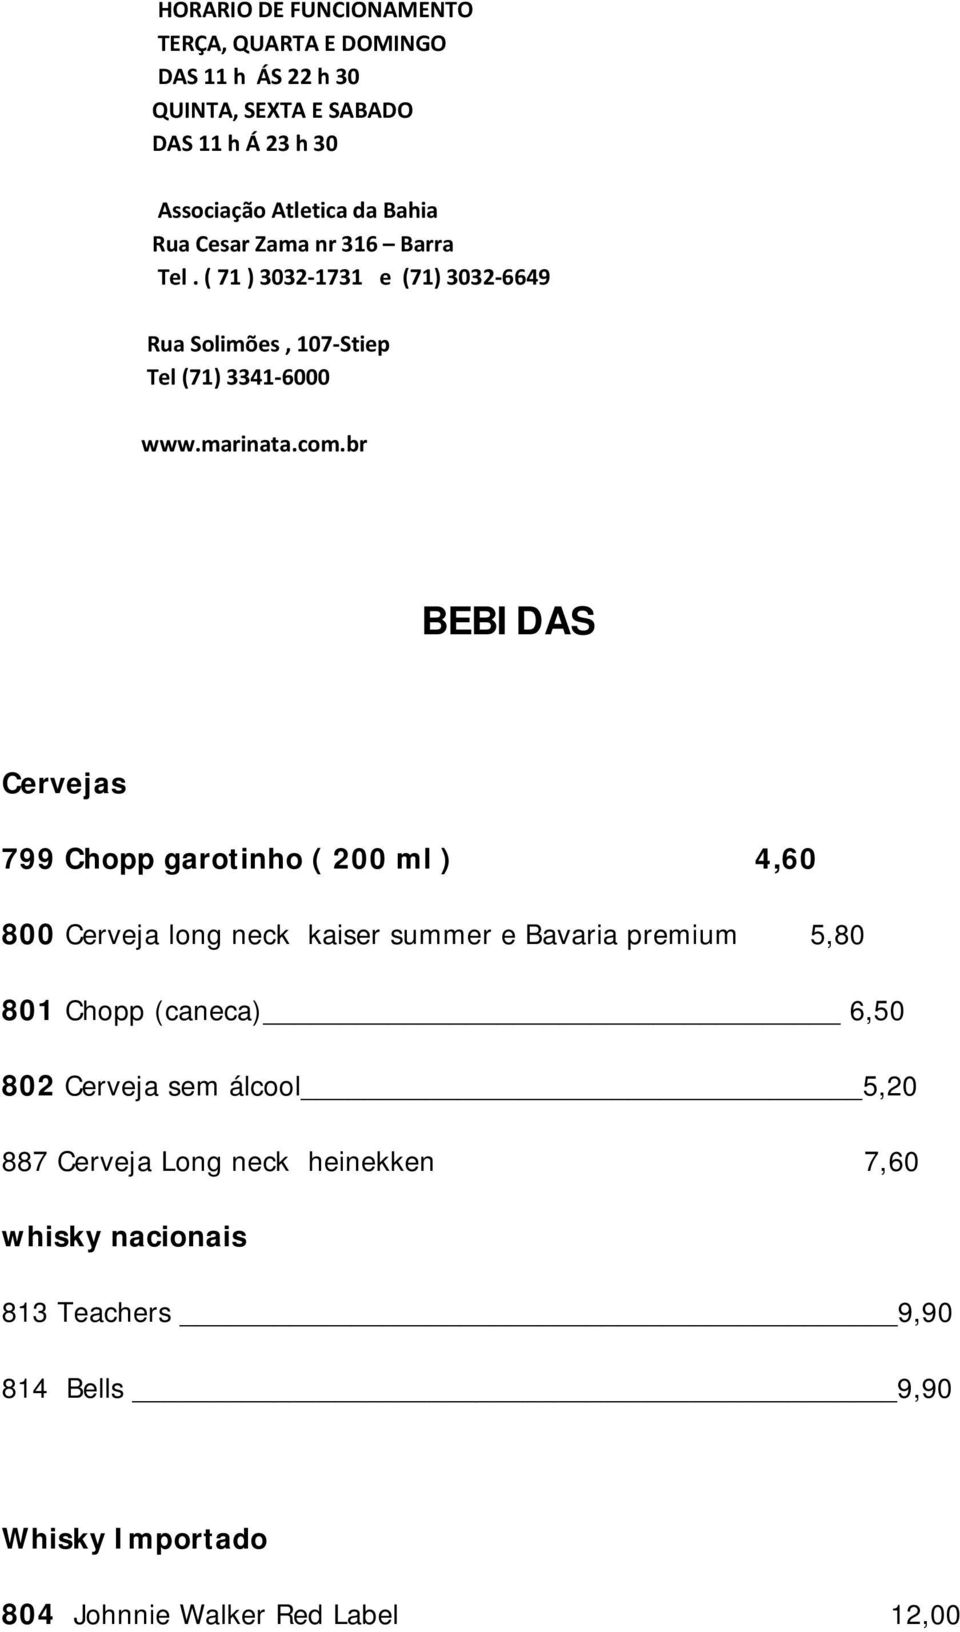 br BEBIDAS Cervejas 799 Chopp garotinho ( 200 ml ) 4,60 800 Cerveja long neck kaiser summer e Bavaria premium 5,80 801 Chopp (caneca) 6,50 802